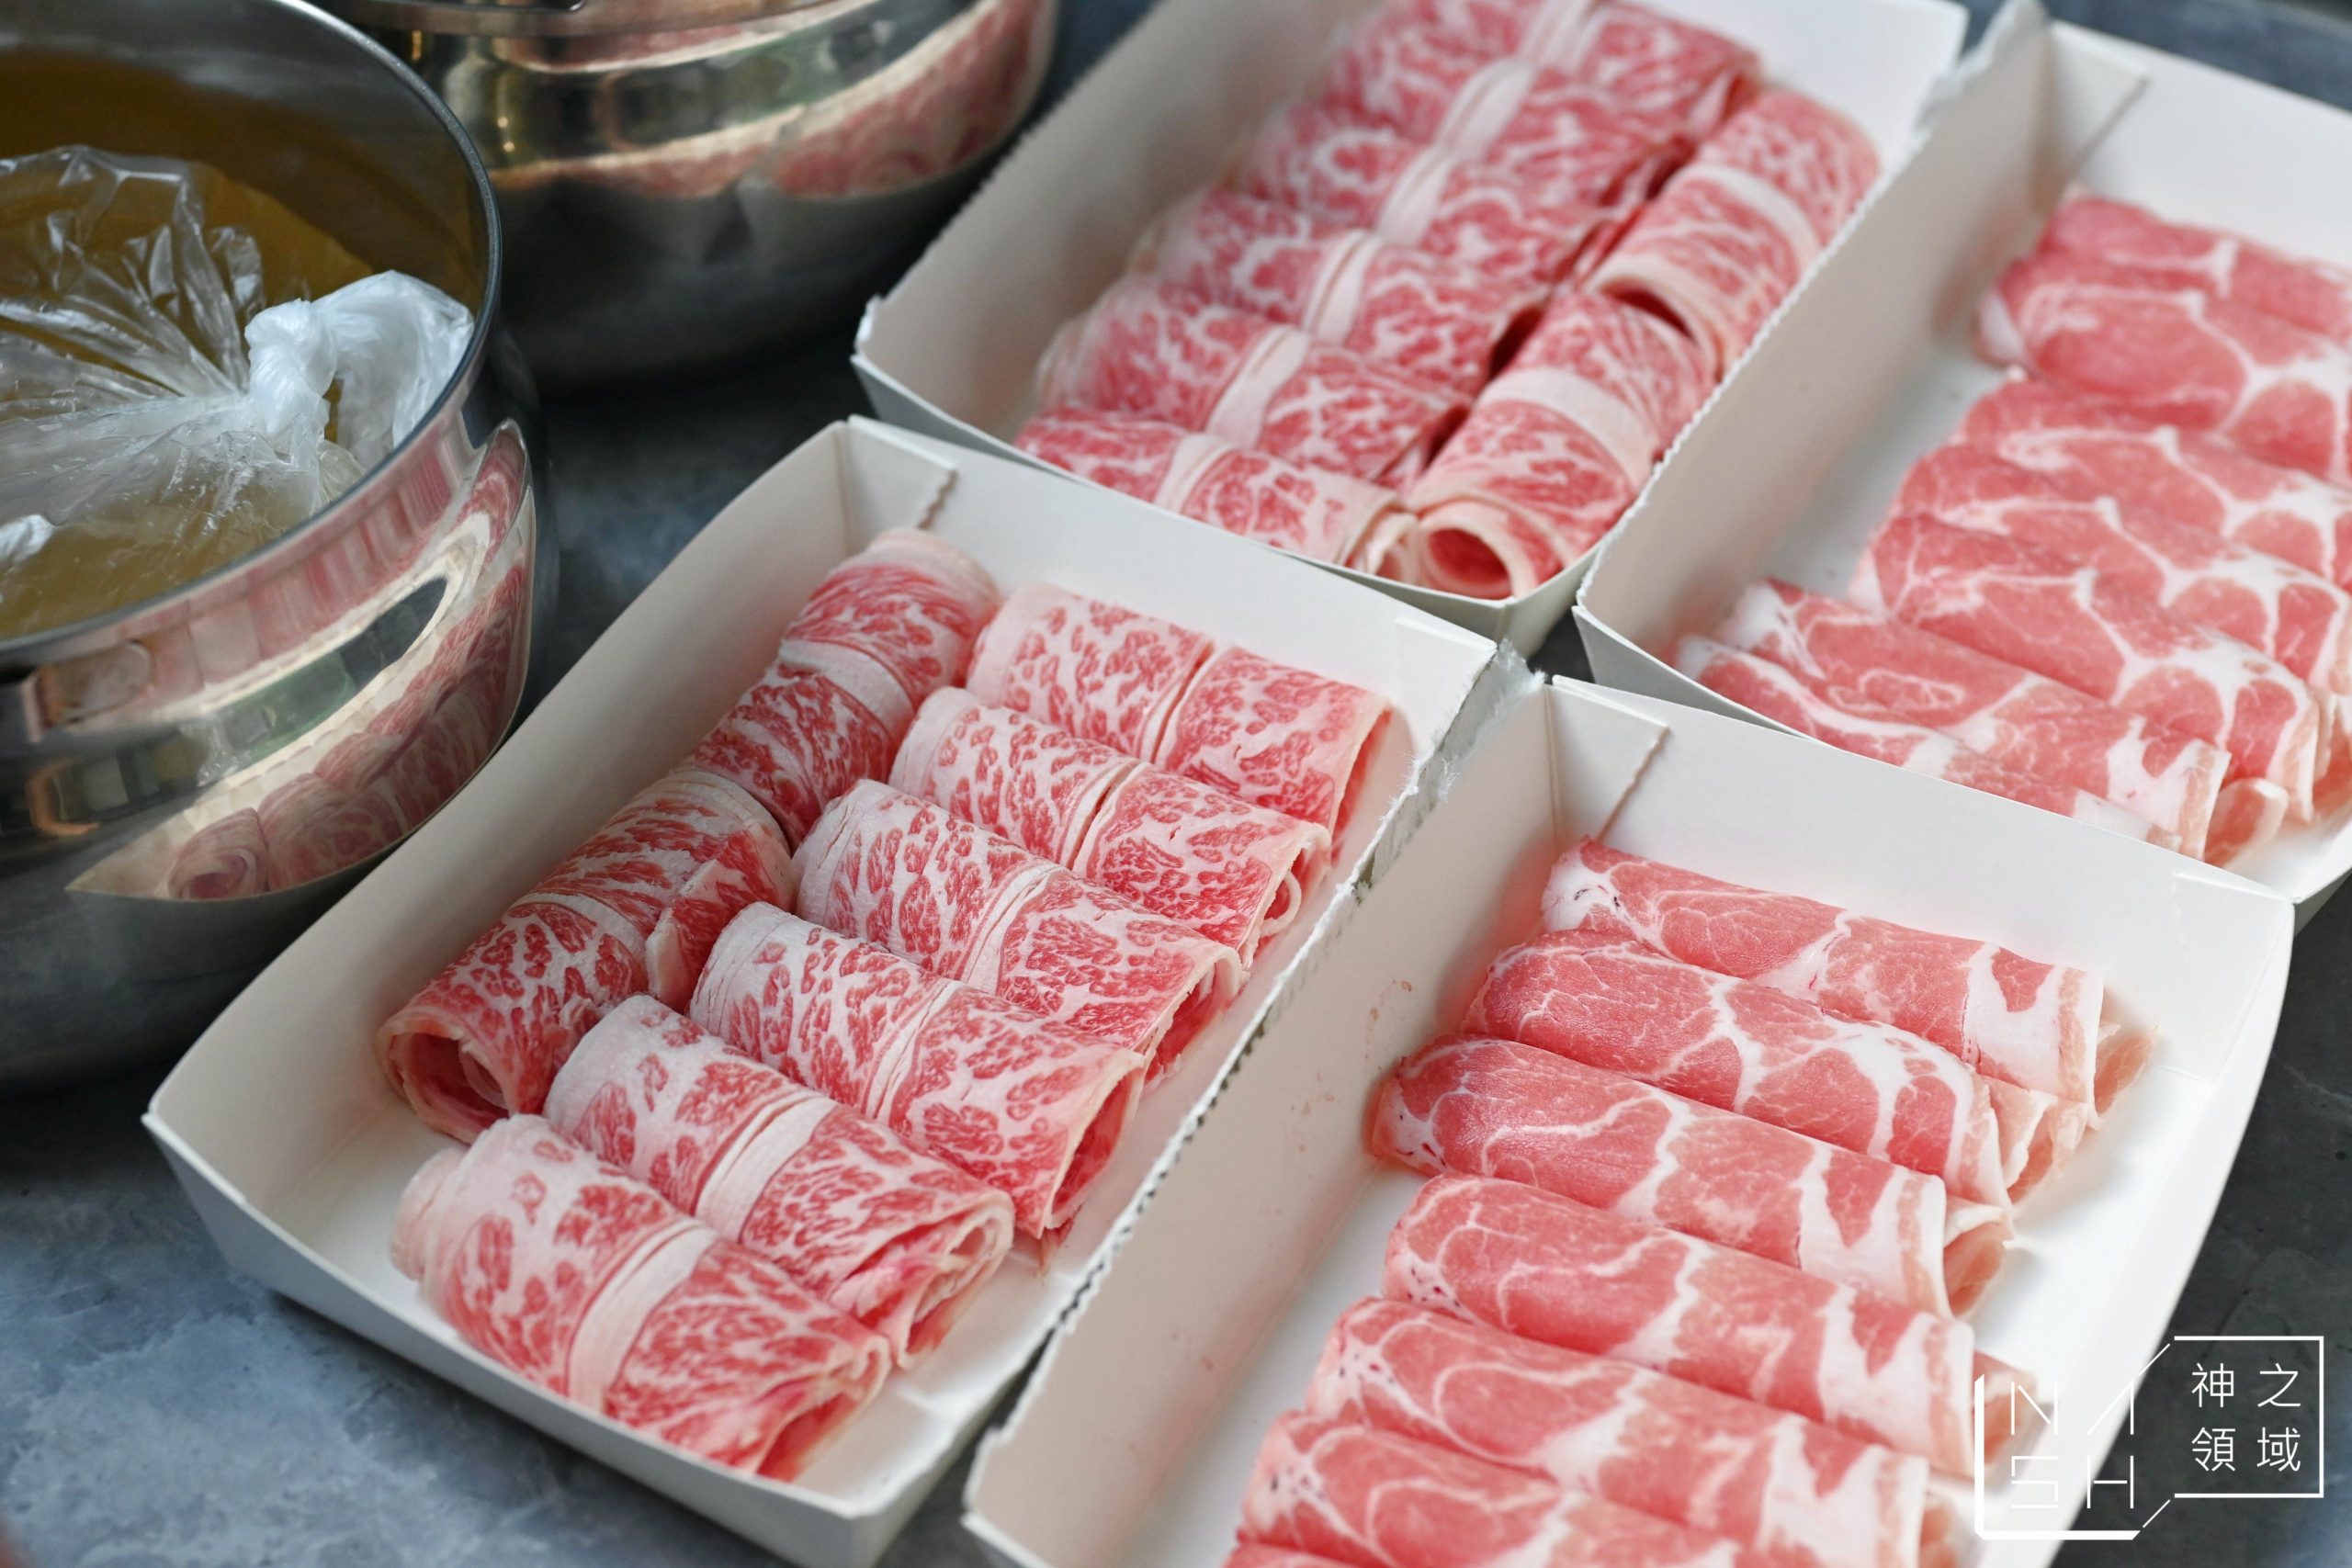 肉老大頂級肉品涮涮鍋